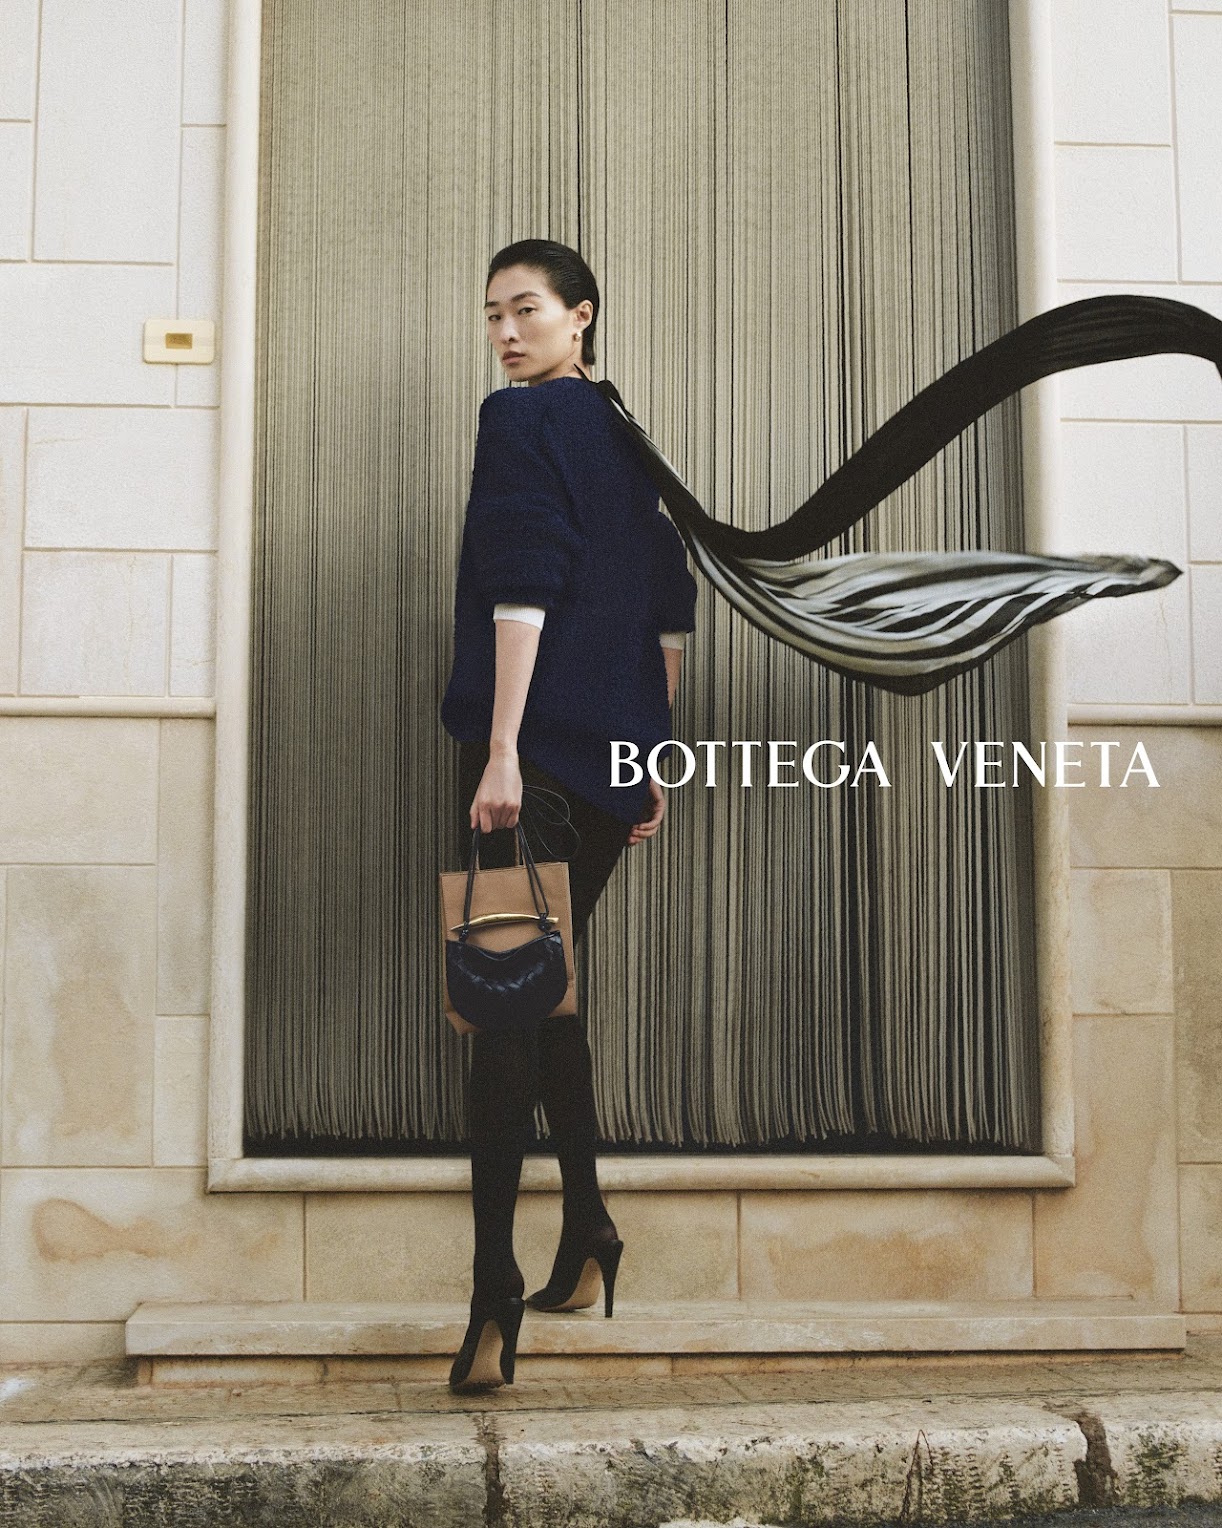 Bottega Veneta Says Andiamo With a New Vacation-Ready Bag